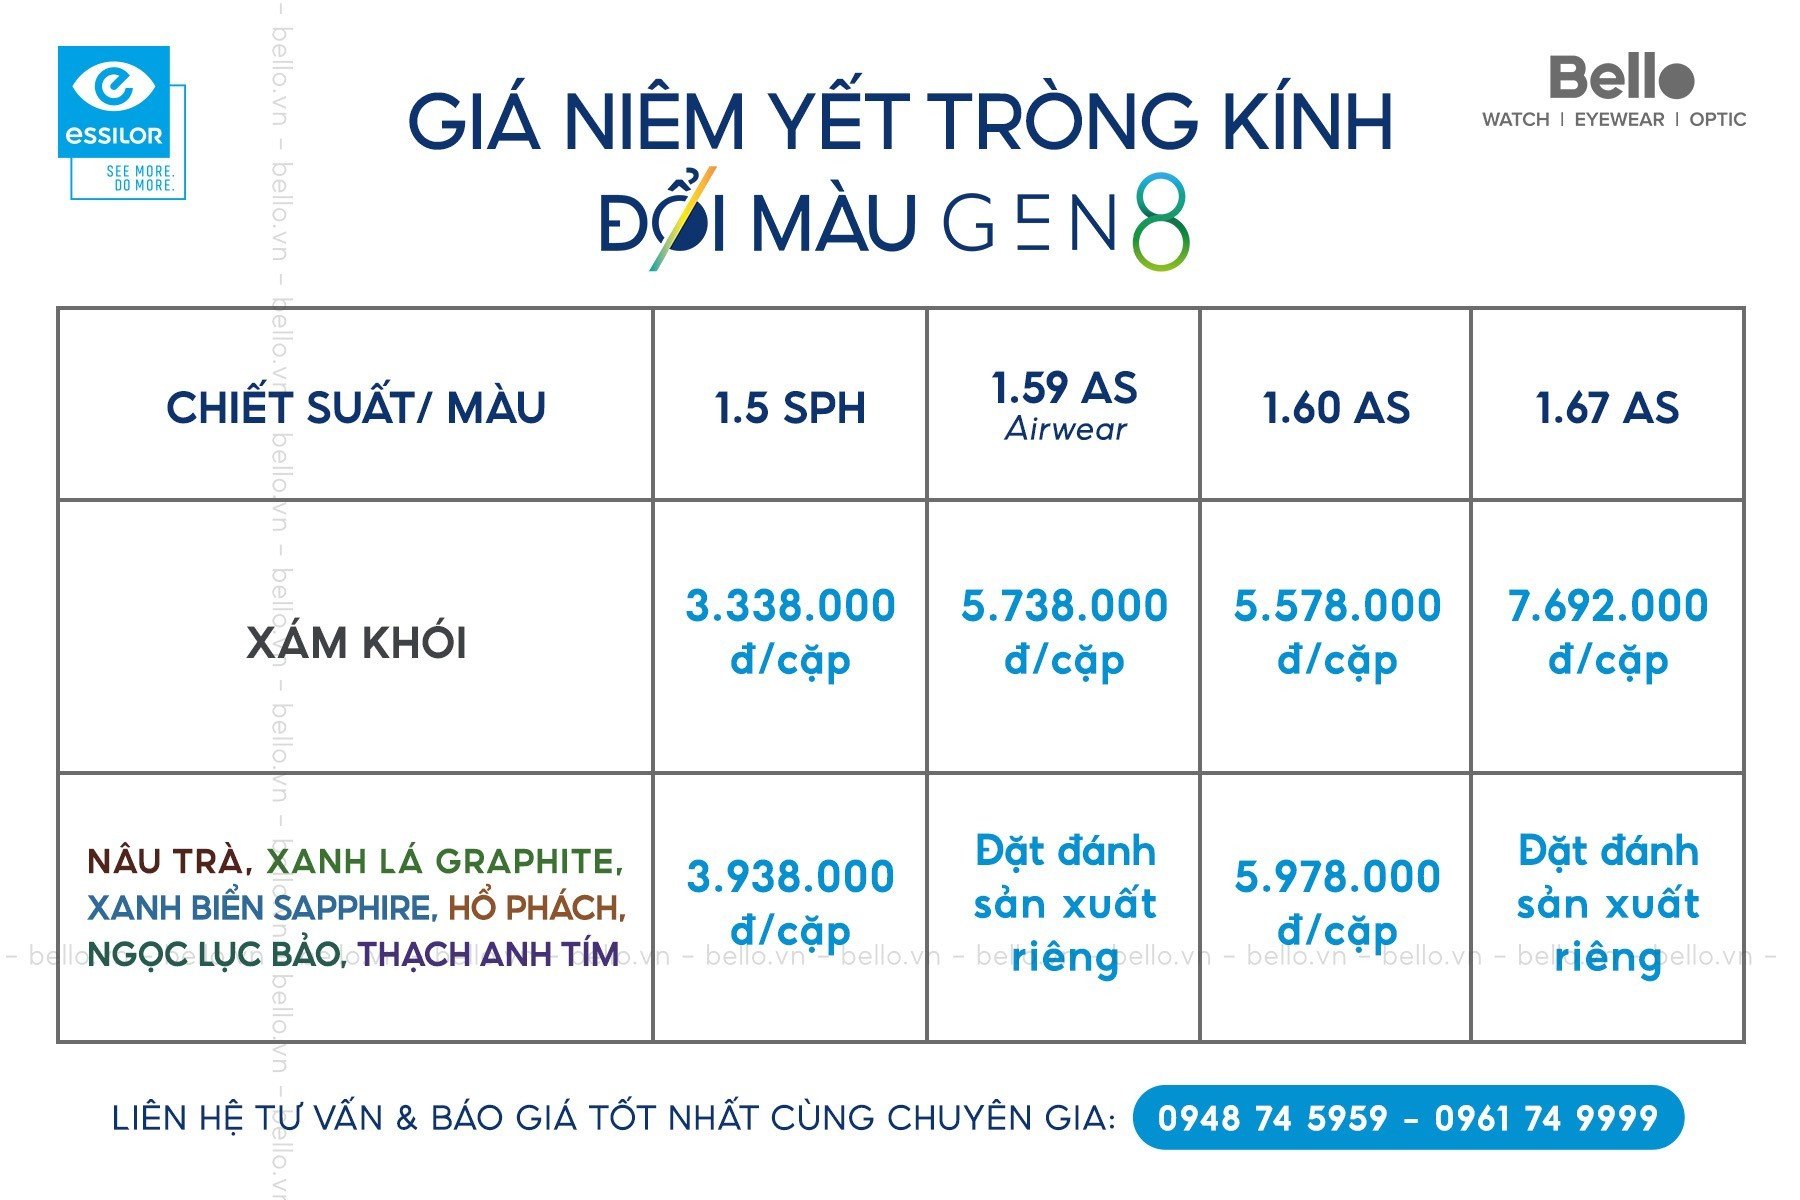 Giá niêm yết Đổi màu Gen 8 tại Việt Nam